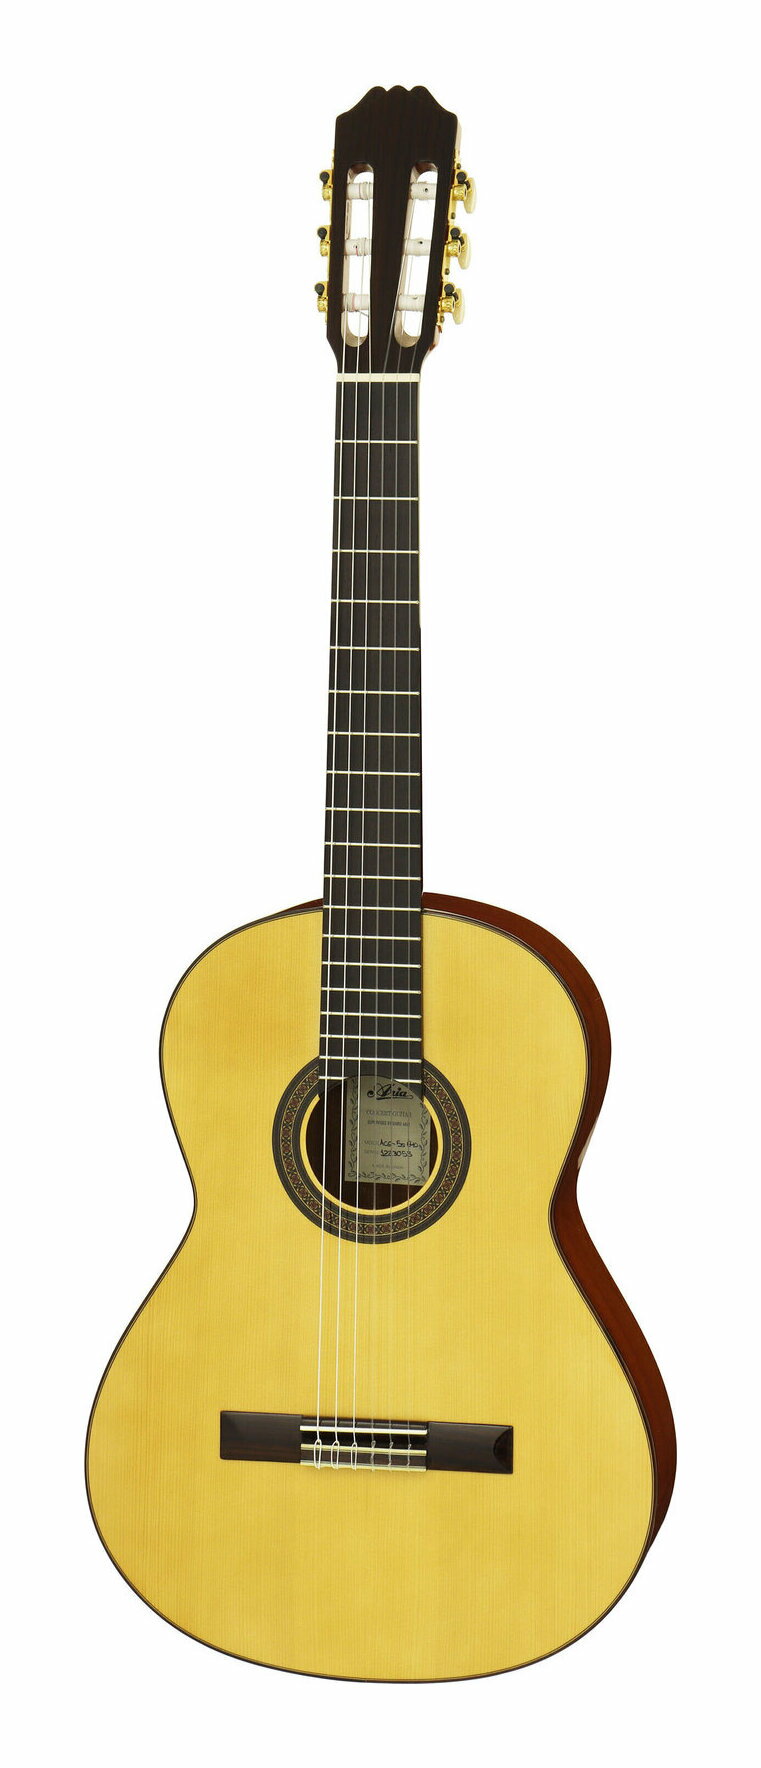 ARIA ACE-5S 640 スプルース単板トップ 640mmスケール クラシックギター スペイン製/ケース付【送料無料】【ポイント10倍】